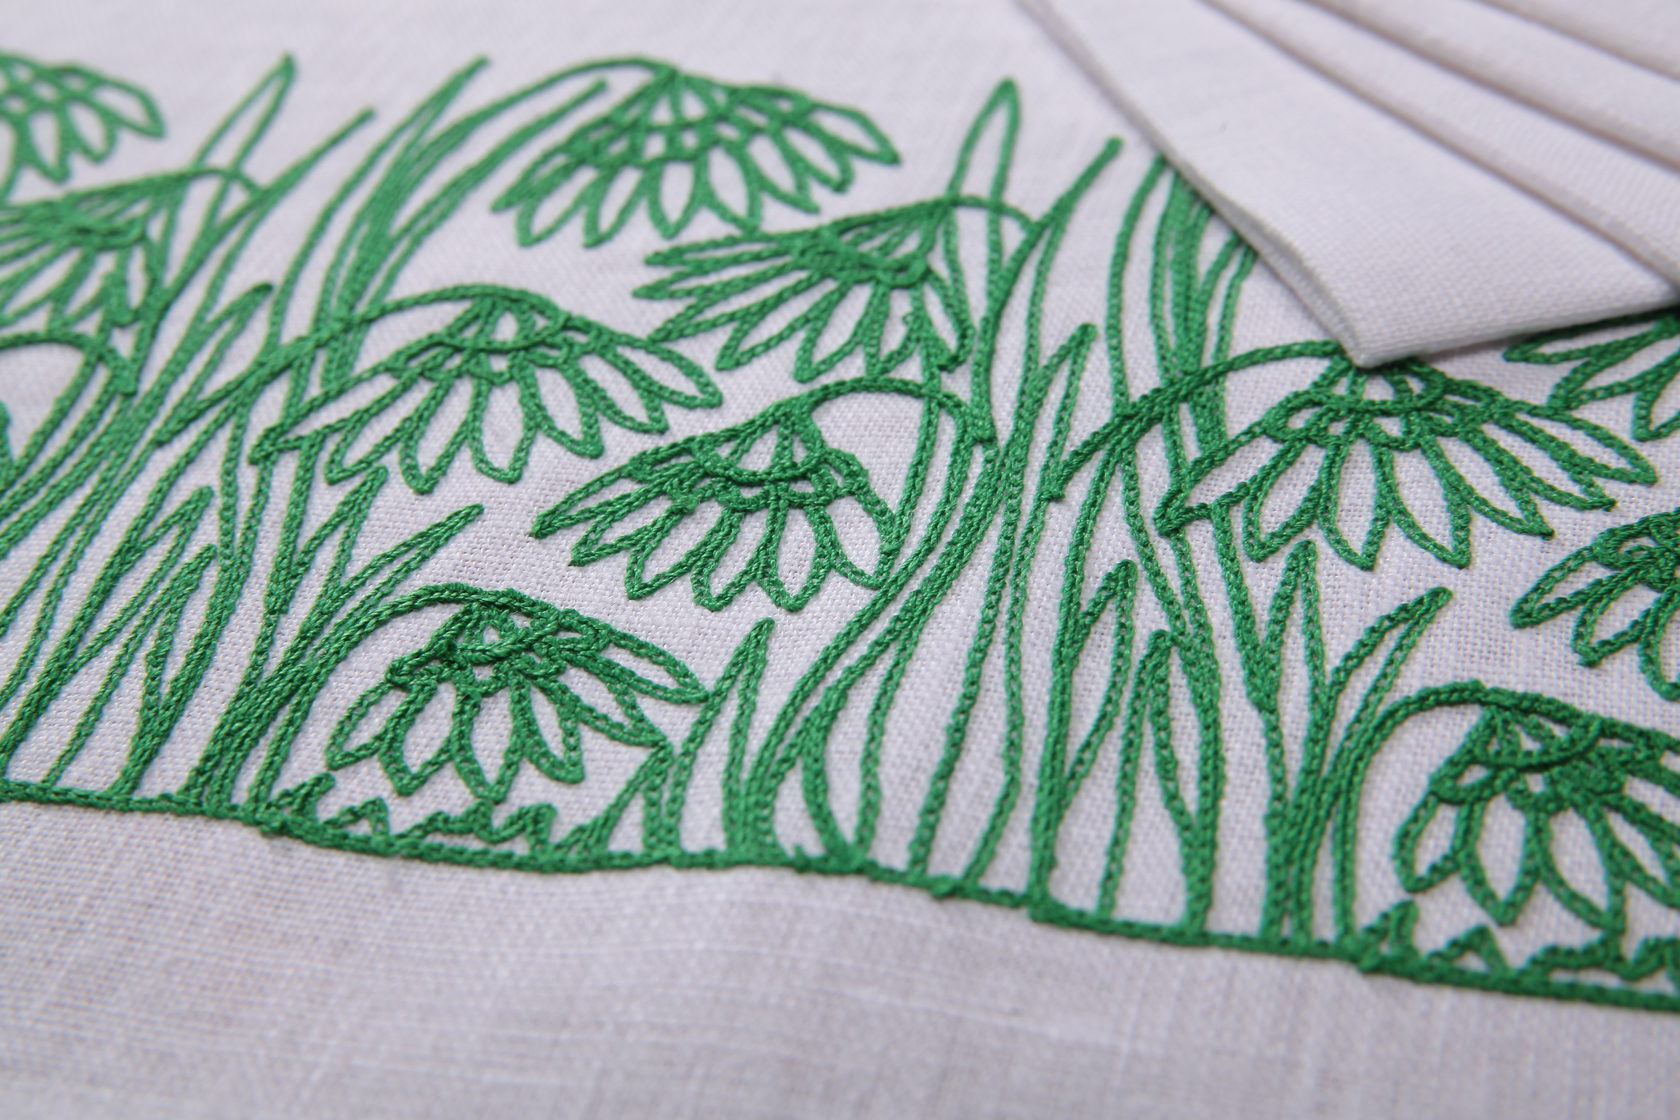 Тамбурная вышивка (Tambour Embroidery)